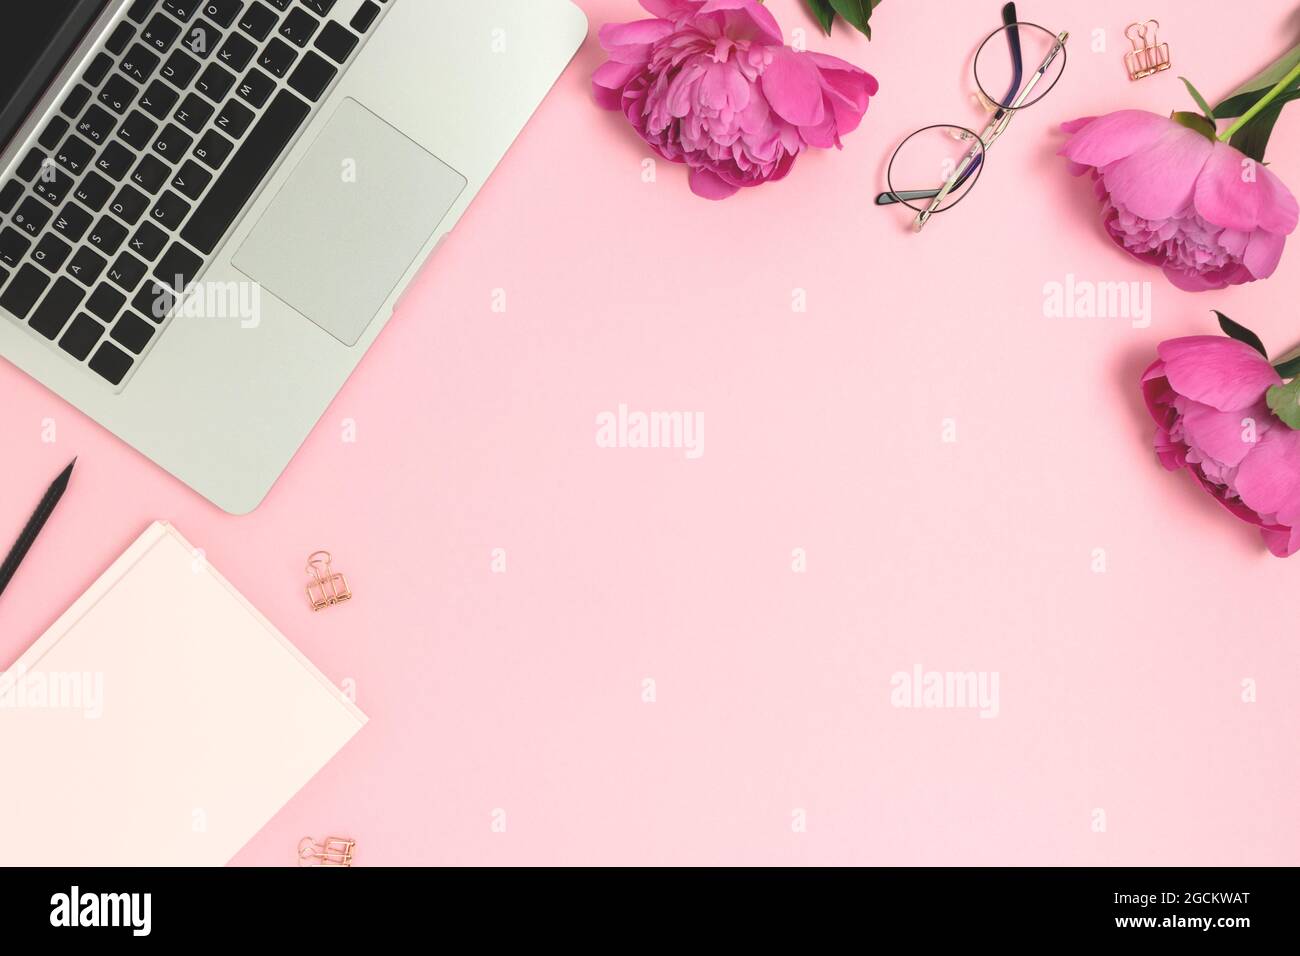 Góc làm việc xinh xắn với laptop và hoa hồng sẽ giúp bạn cảm thấy thư thái hơn trong công việc. Trang trí góc làm việc của bạn với những đóa hoa hồng xinh đẹp và chiếc laptop đầy màu sắc đáng yêu. Hãy tận hưởng không gian lãng mạn và đầy sức sống này. 